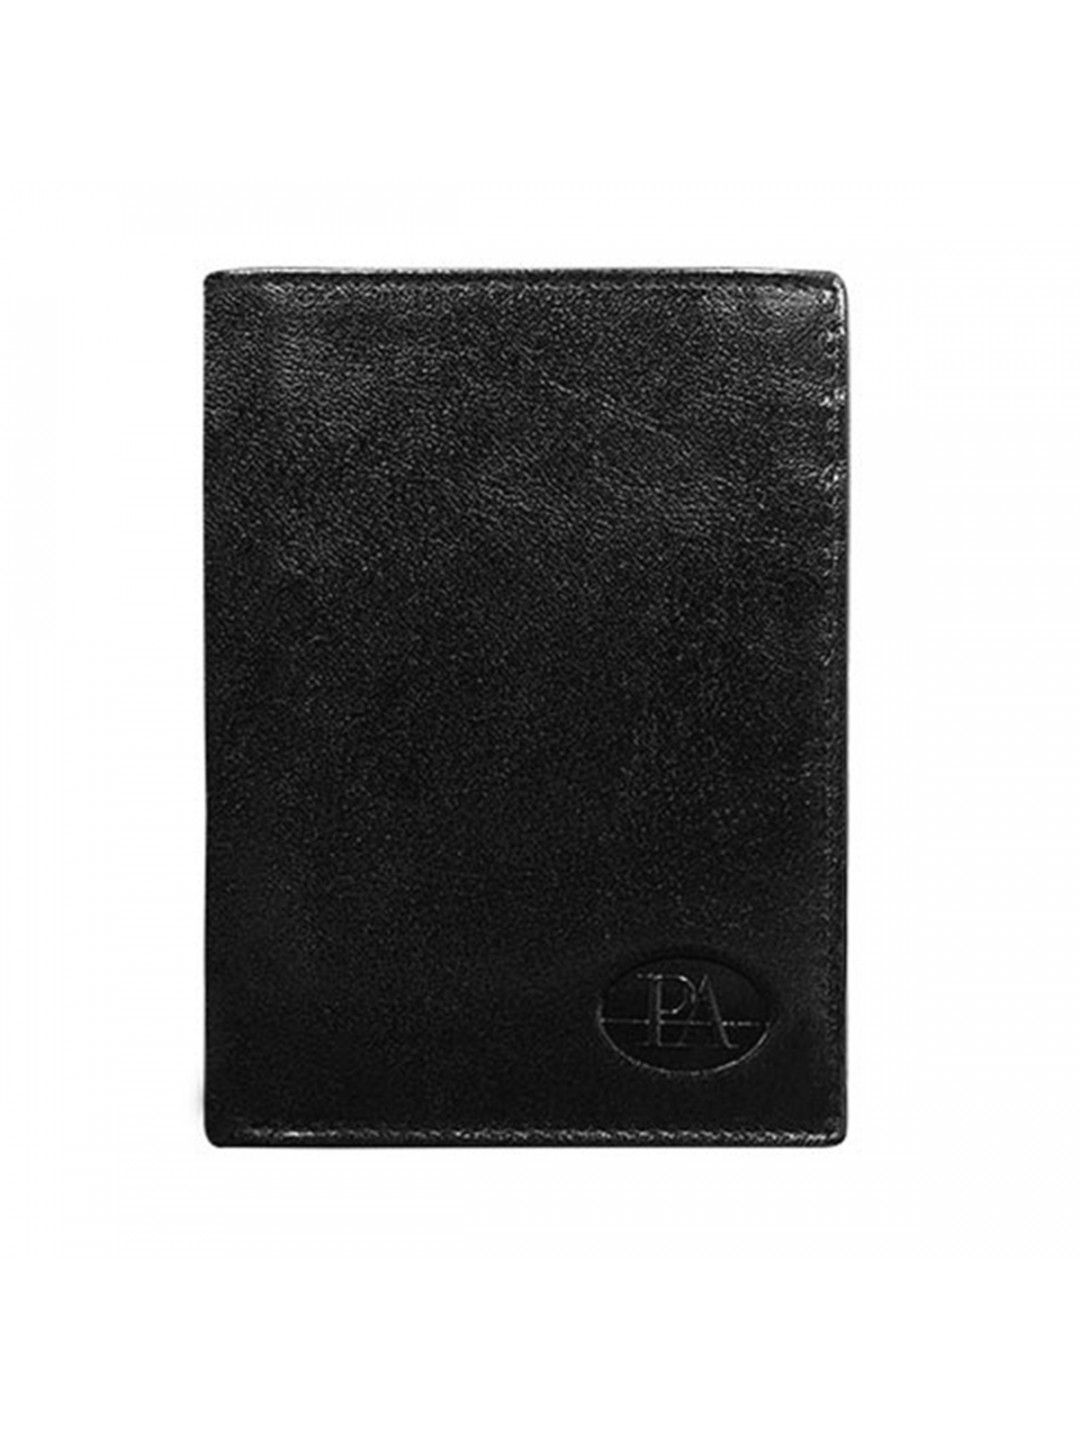 Luxusní pánská kožená peněženka černá Andreus